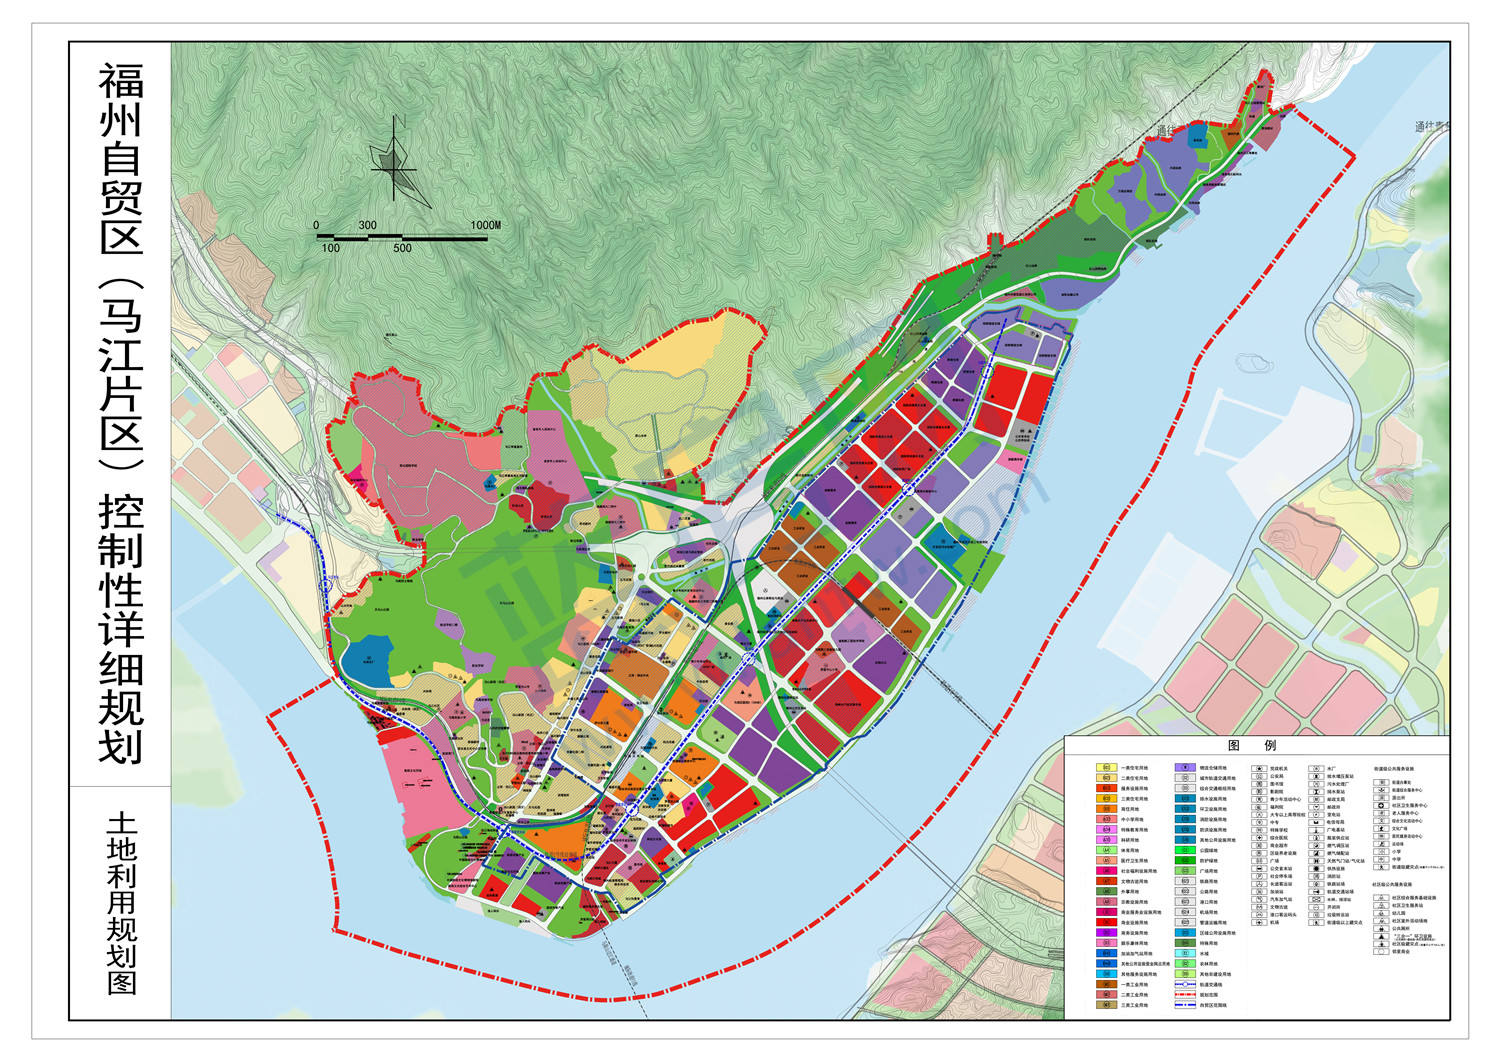 马尾三大片区规划公示!未来要建多条地铁,城际线